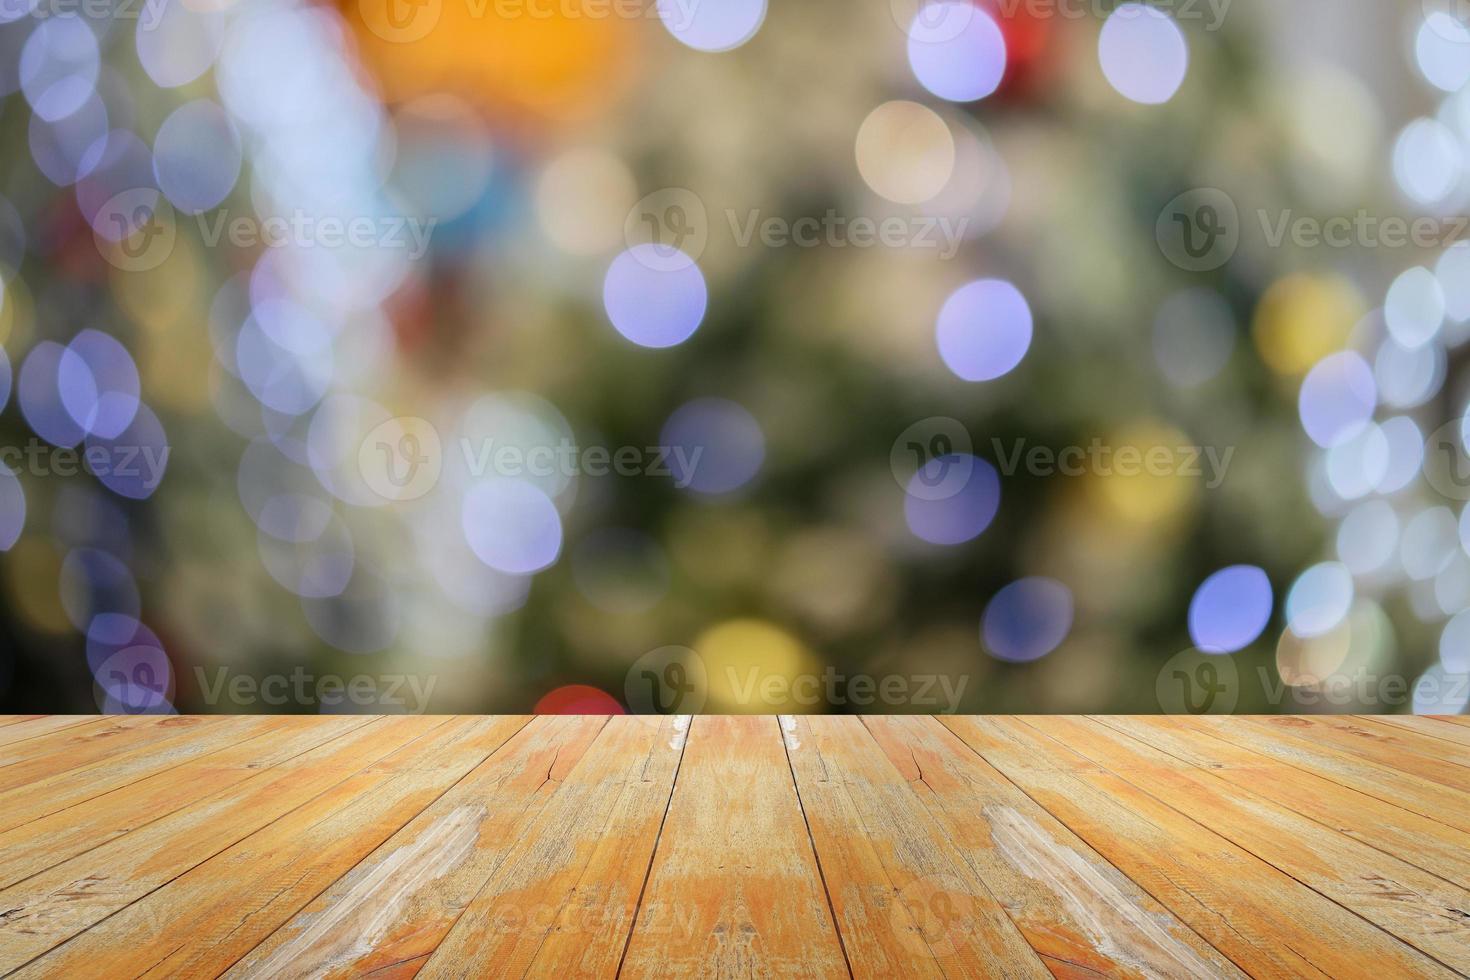 leeg hout tafel top met vervagen Kerstmis boom met bokeh licht achtergrond foto